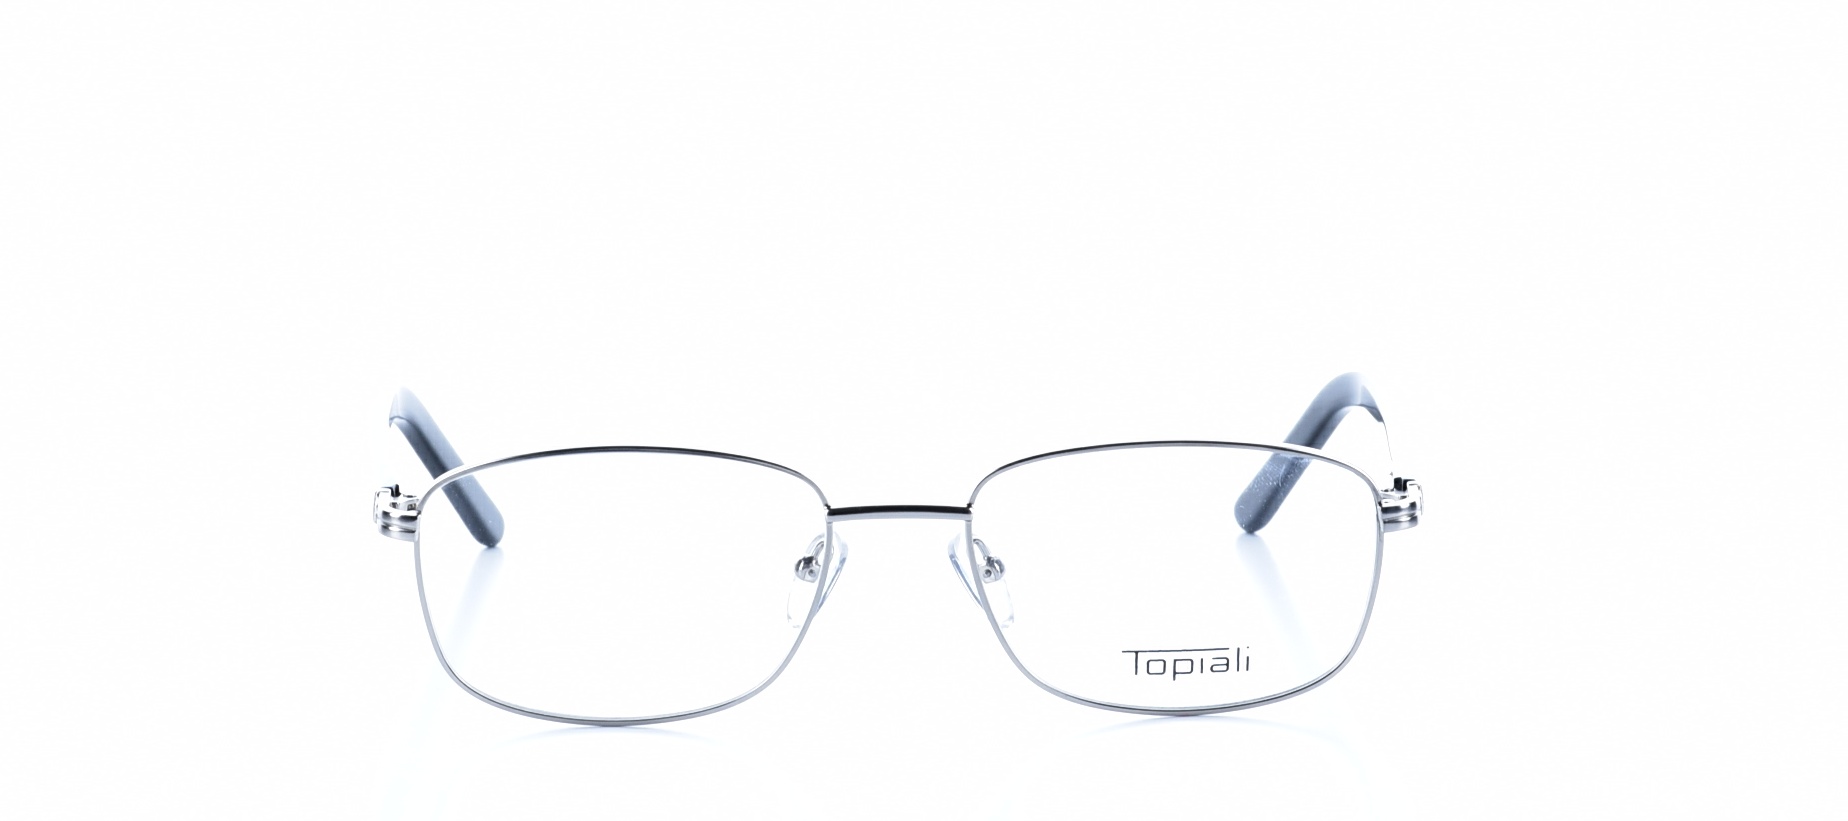 Rama ochelari vedere Topiali